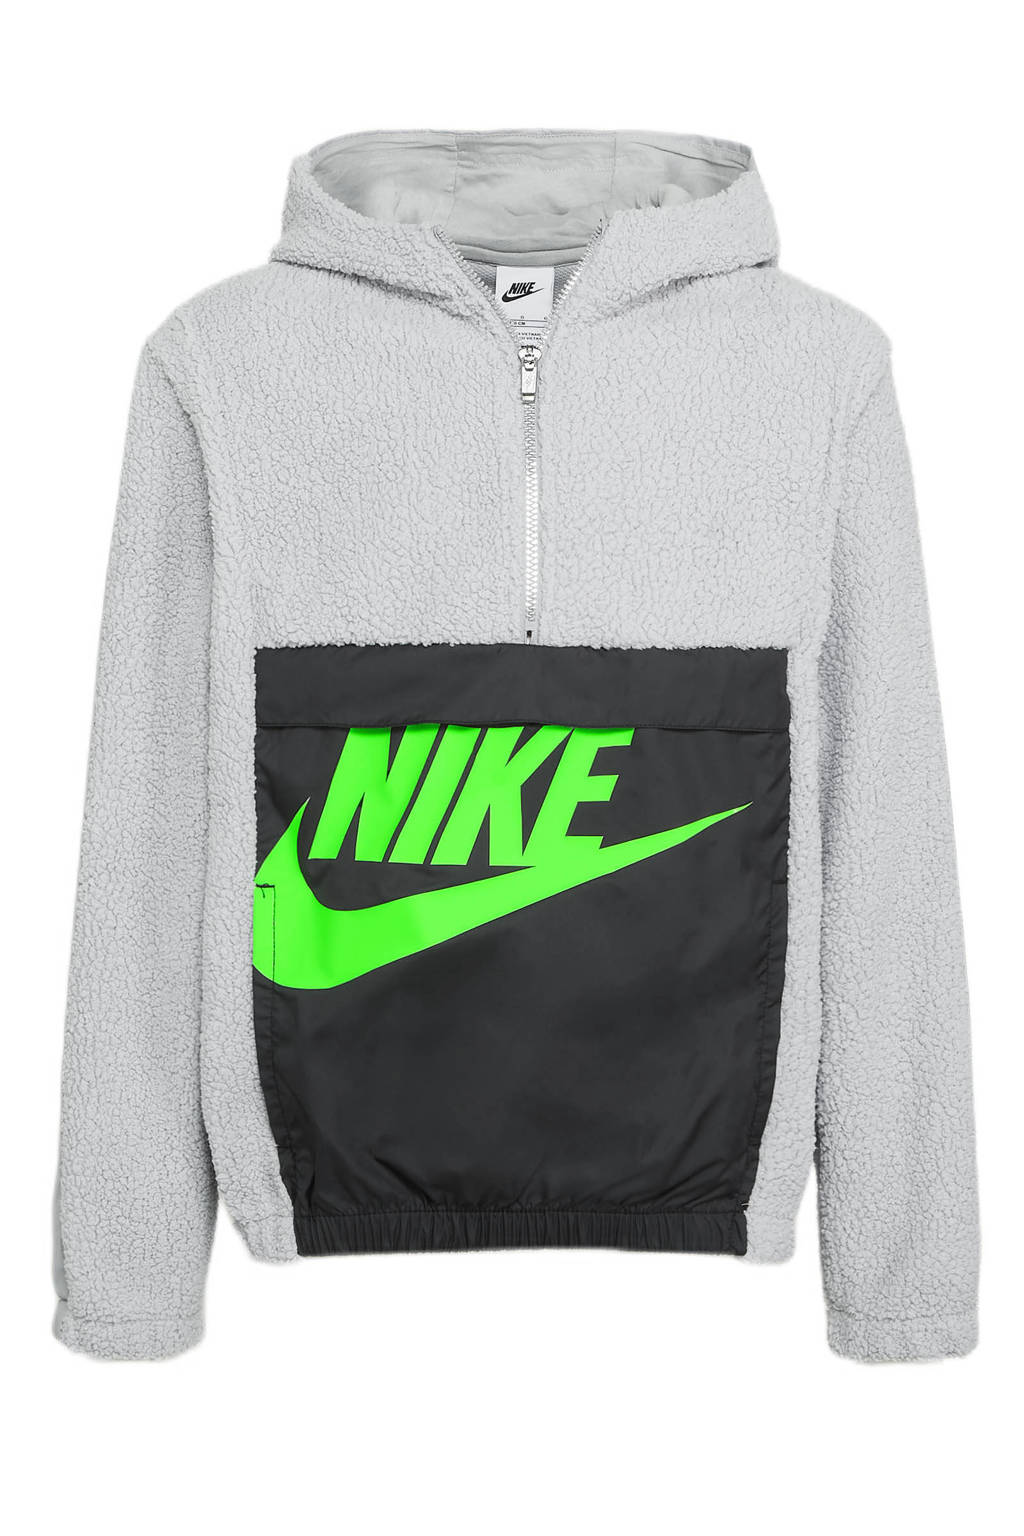 Nike fleece hoodie grijs/zwart/limegroen, Grijs/zwart/limegroen